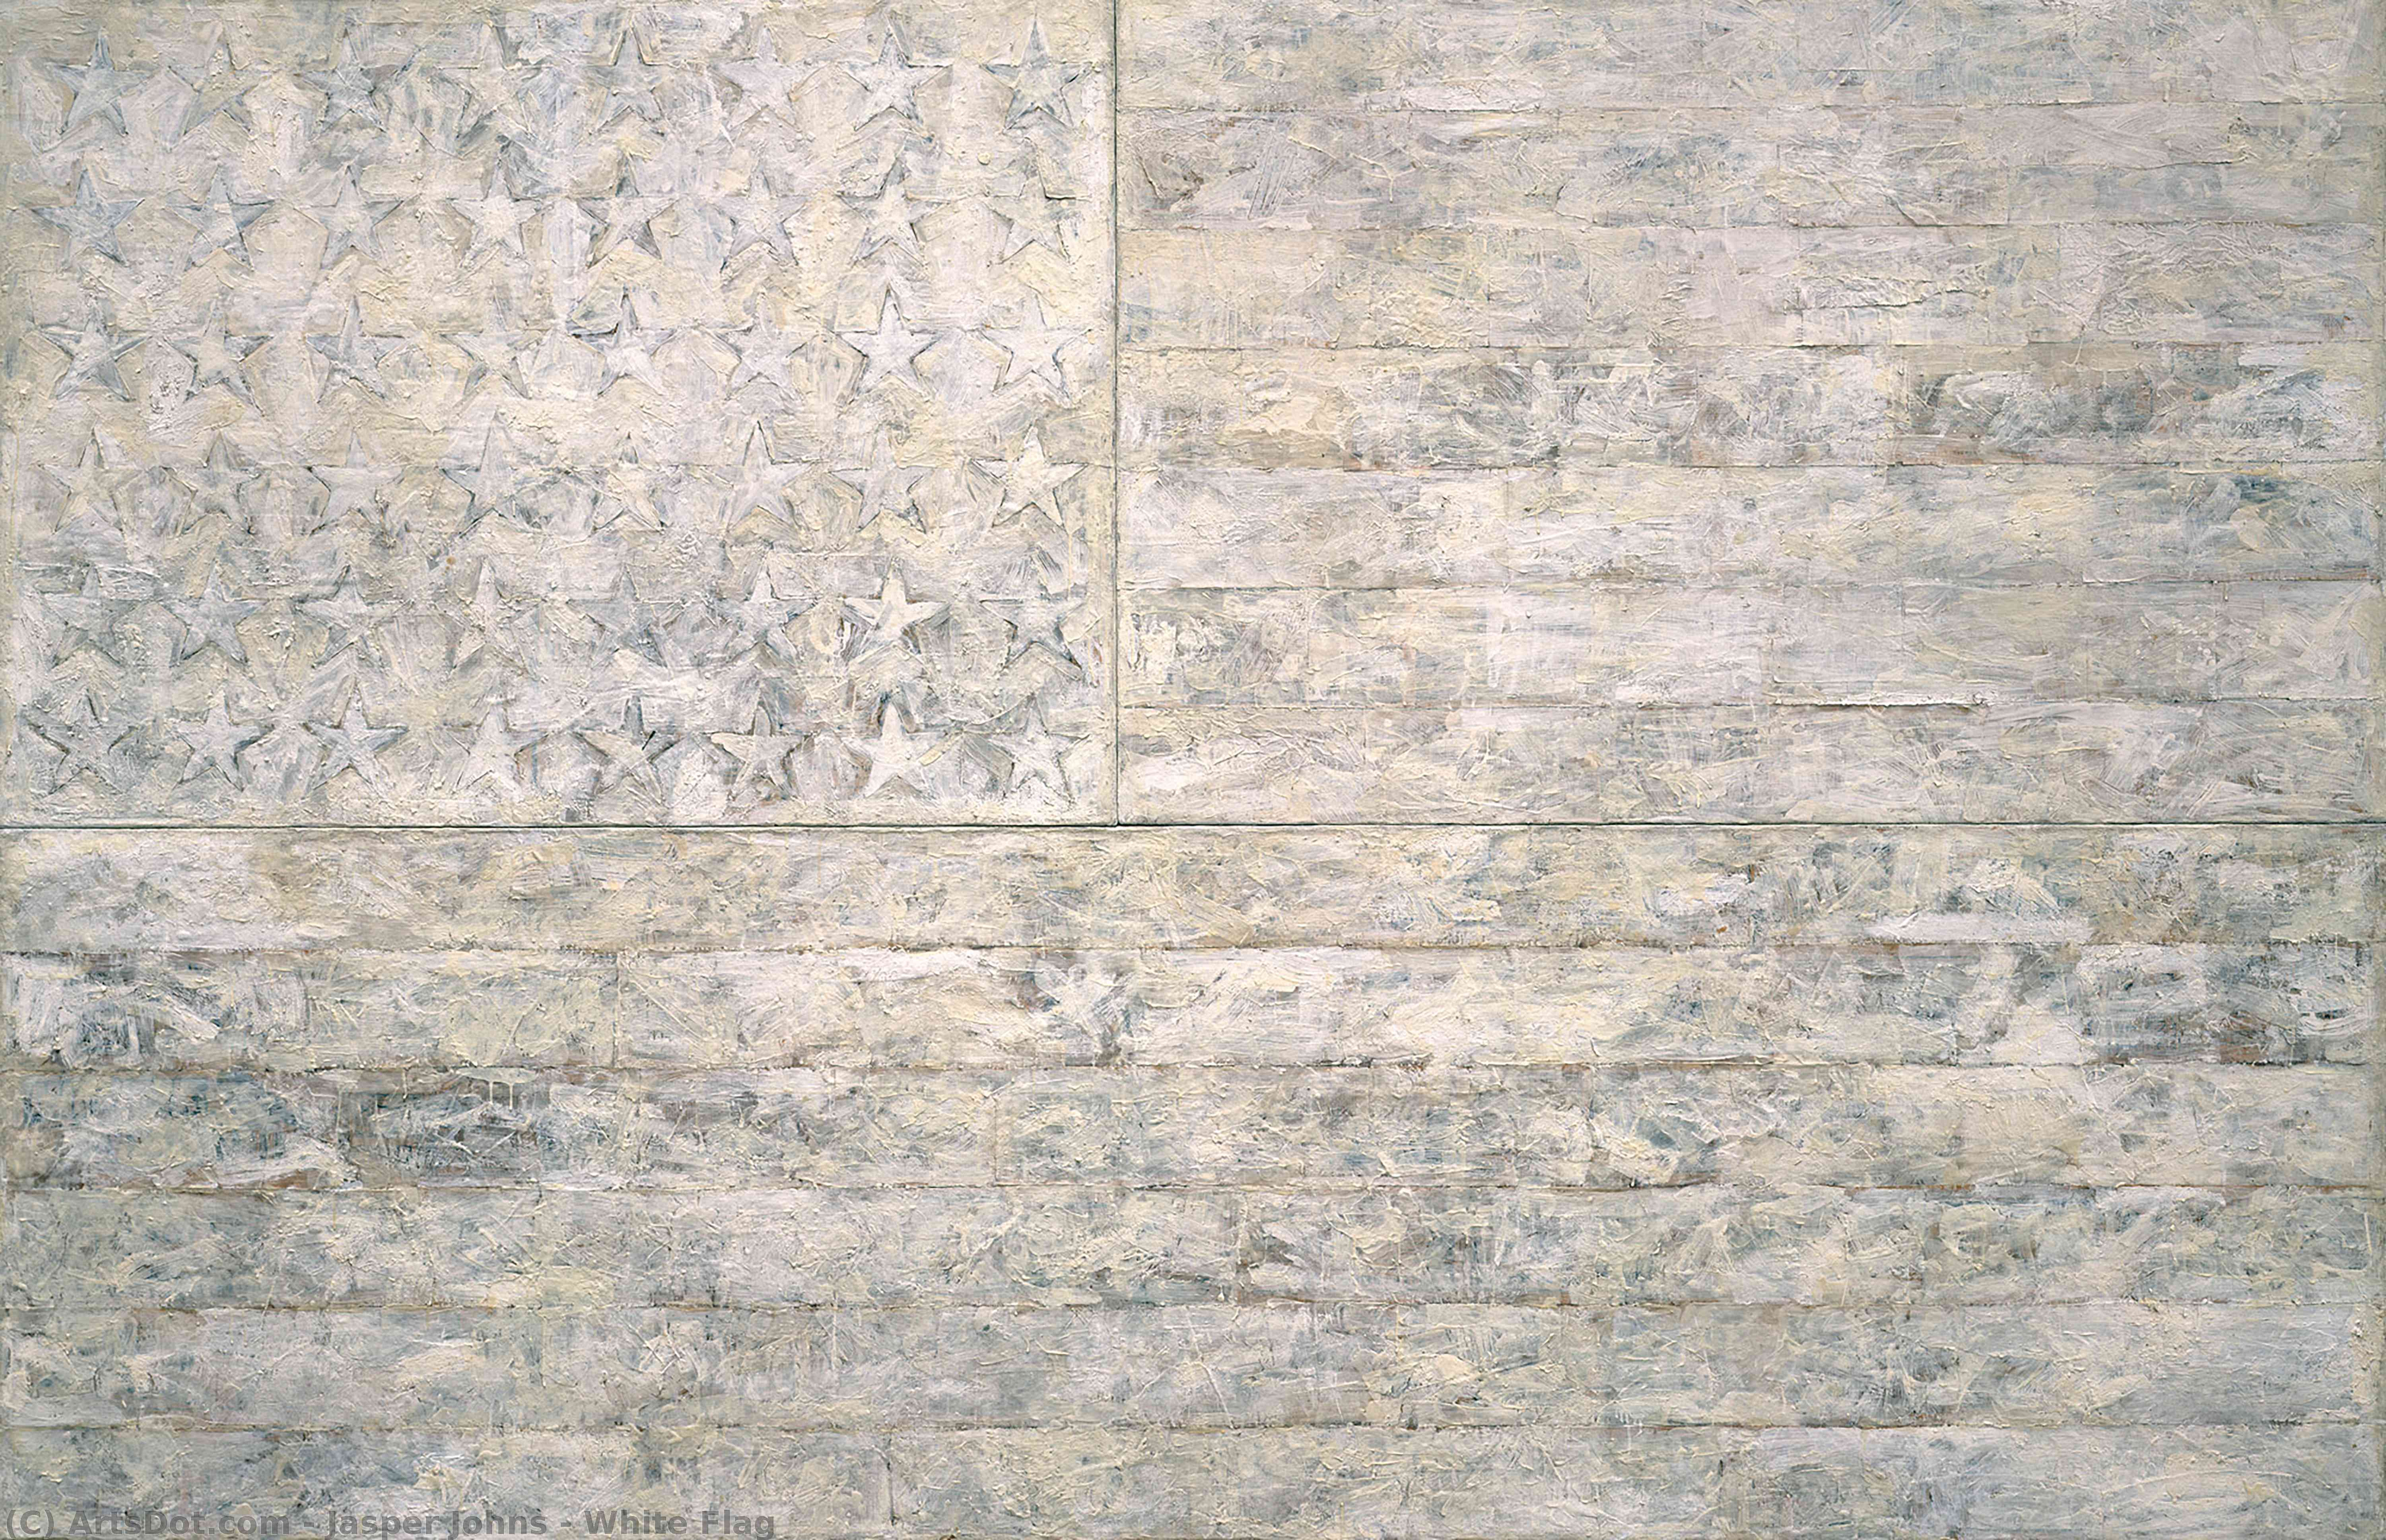 Wikoo.org - موسوعة الفنون الجميلة - اللوحة، العمل الفني Jasper Johns - White Flag